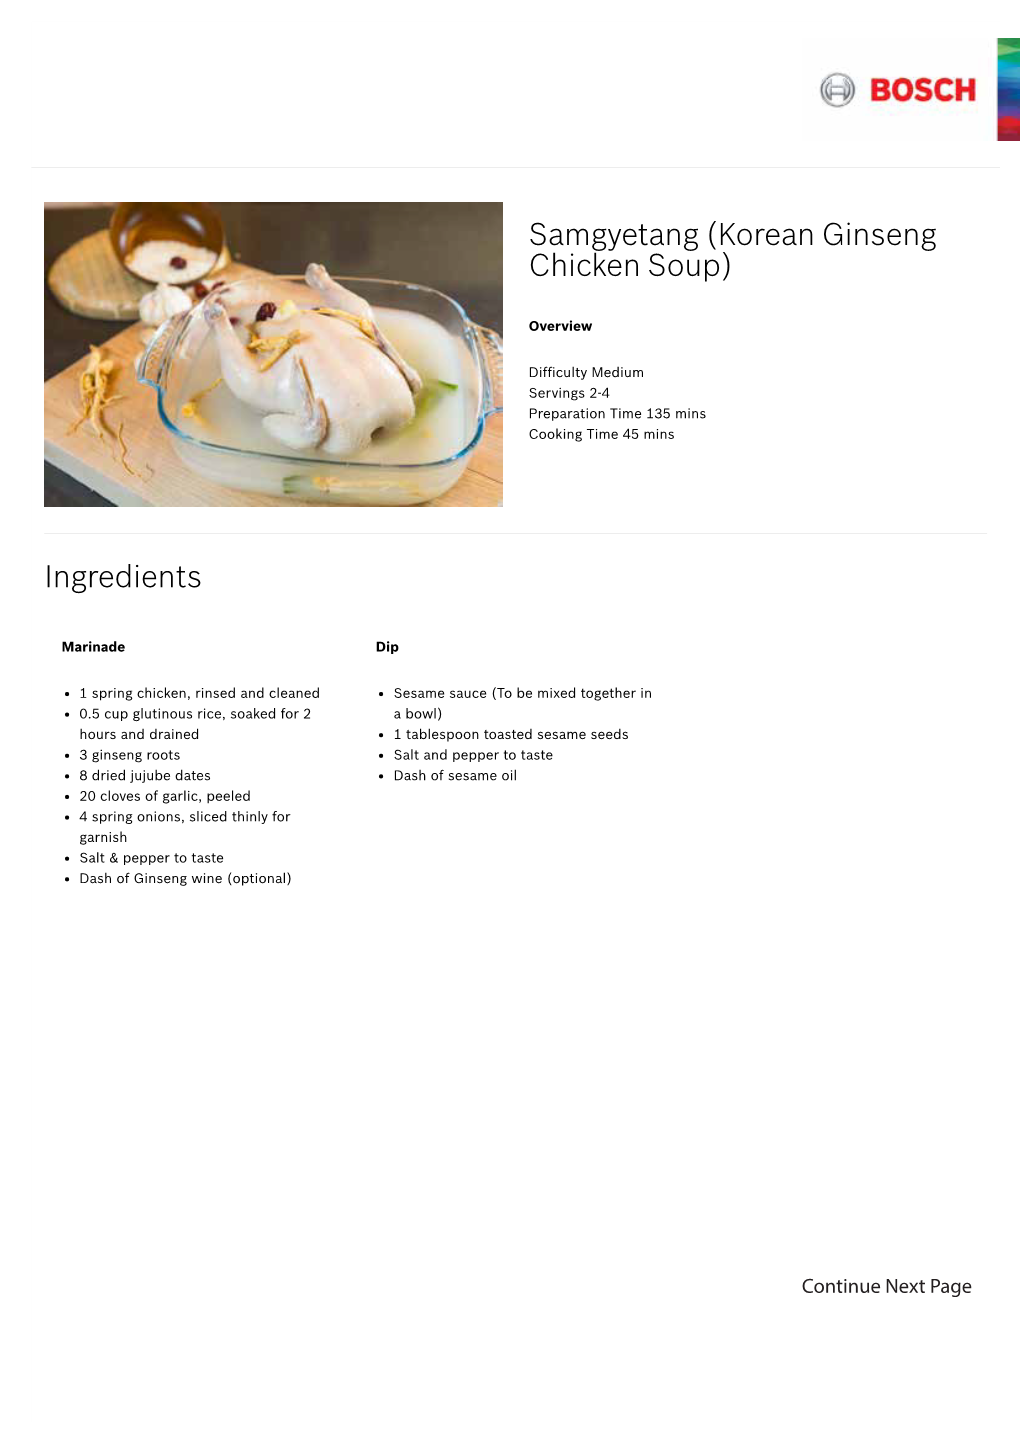 Samgyetang (Korean Ginseng Chicken Soup) Ingredients Methods